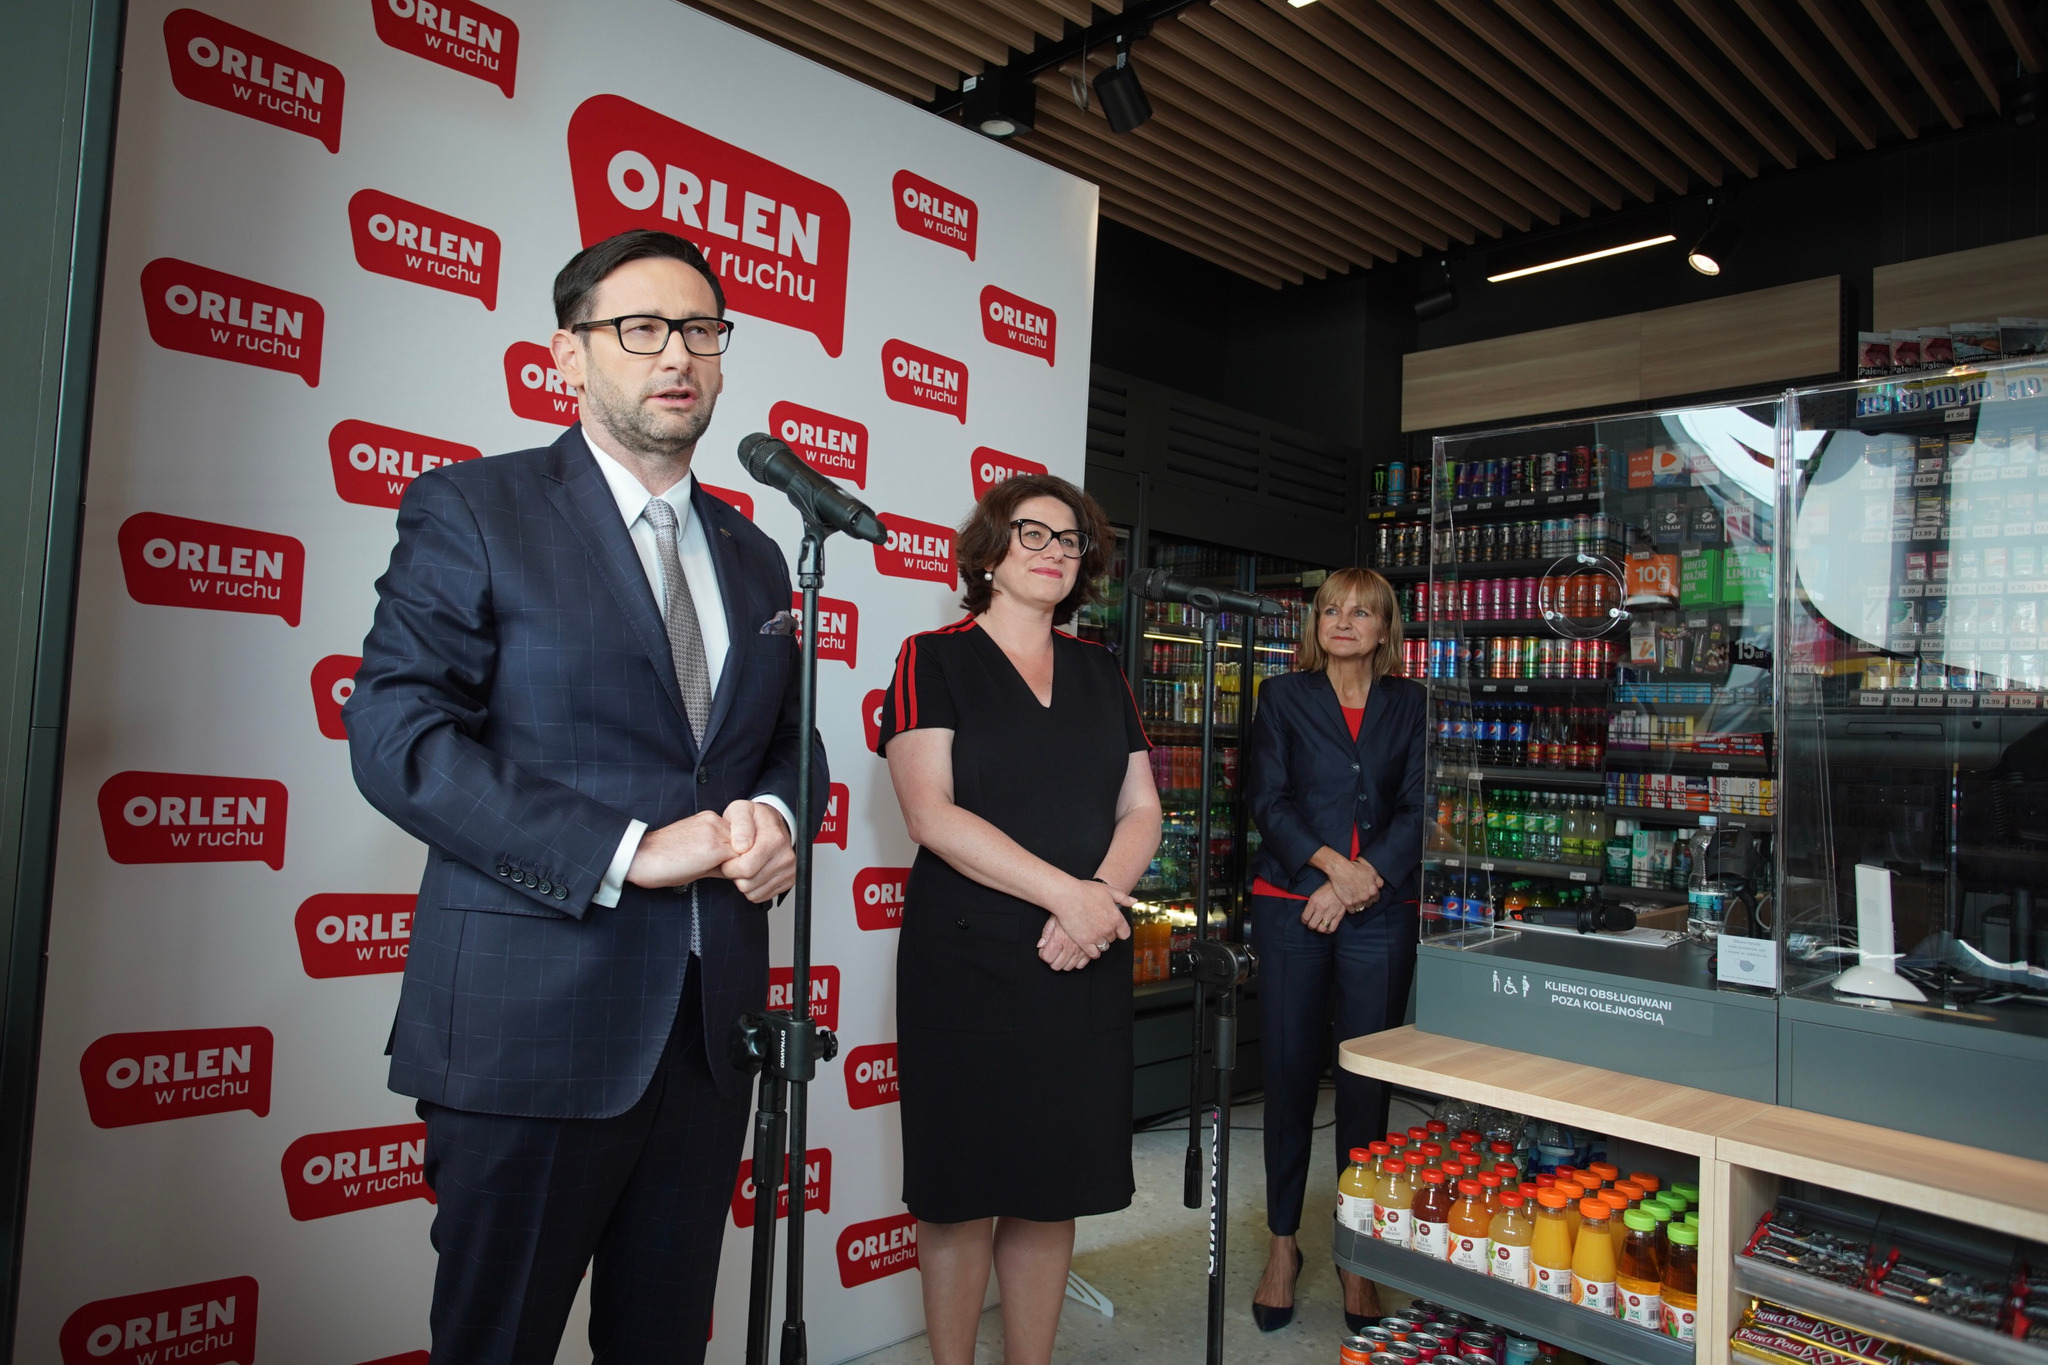 PKN Orlen w całym kraju otworzy około 900 sklepów pod marką „ORLEN w ruchu” (zdjęcia)